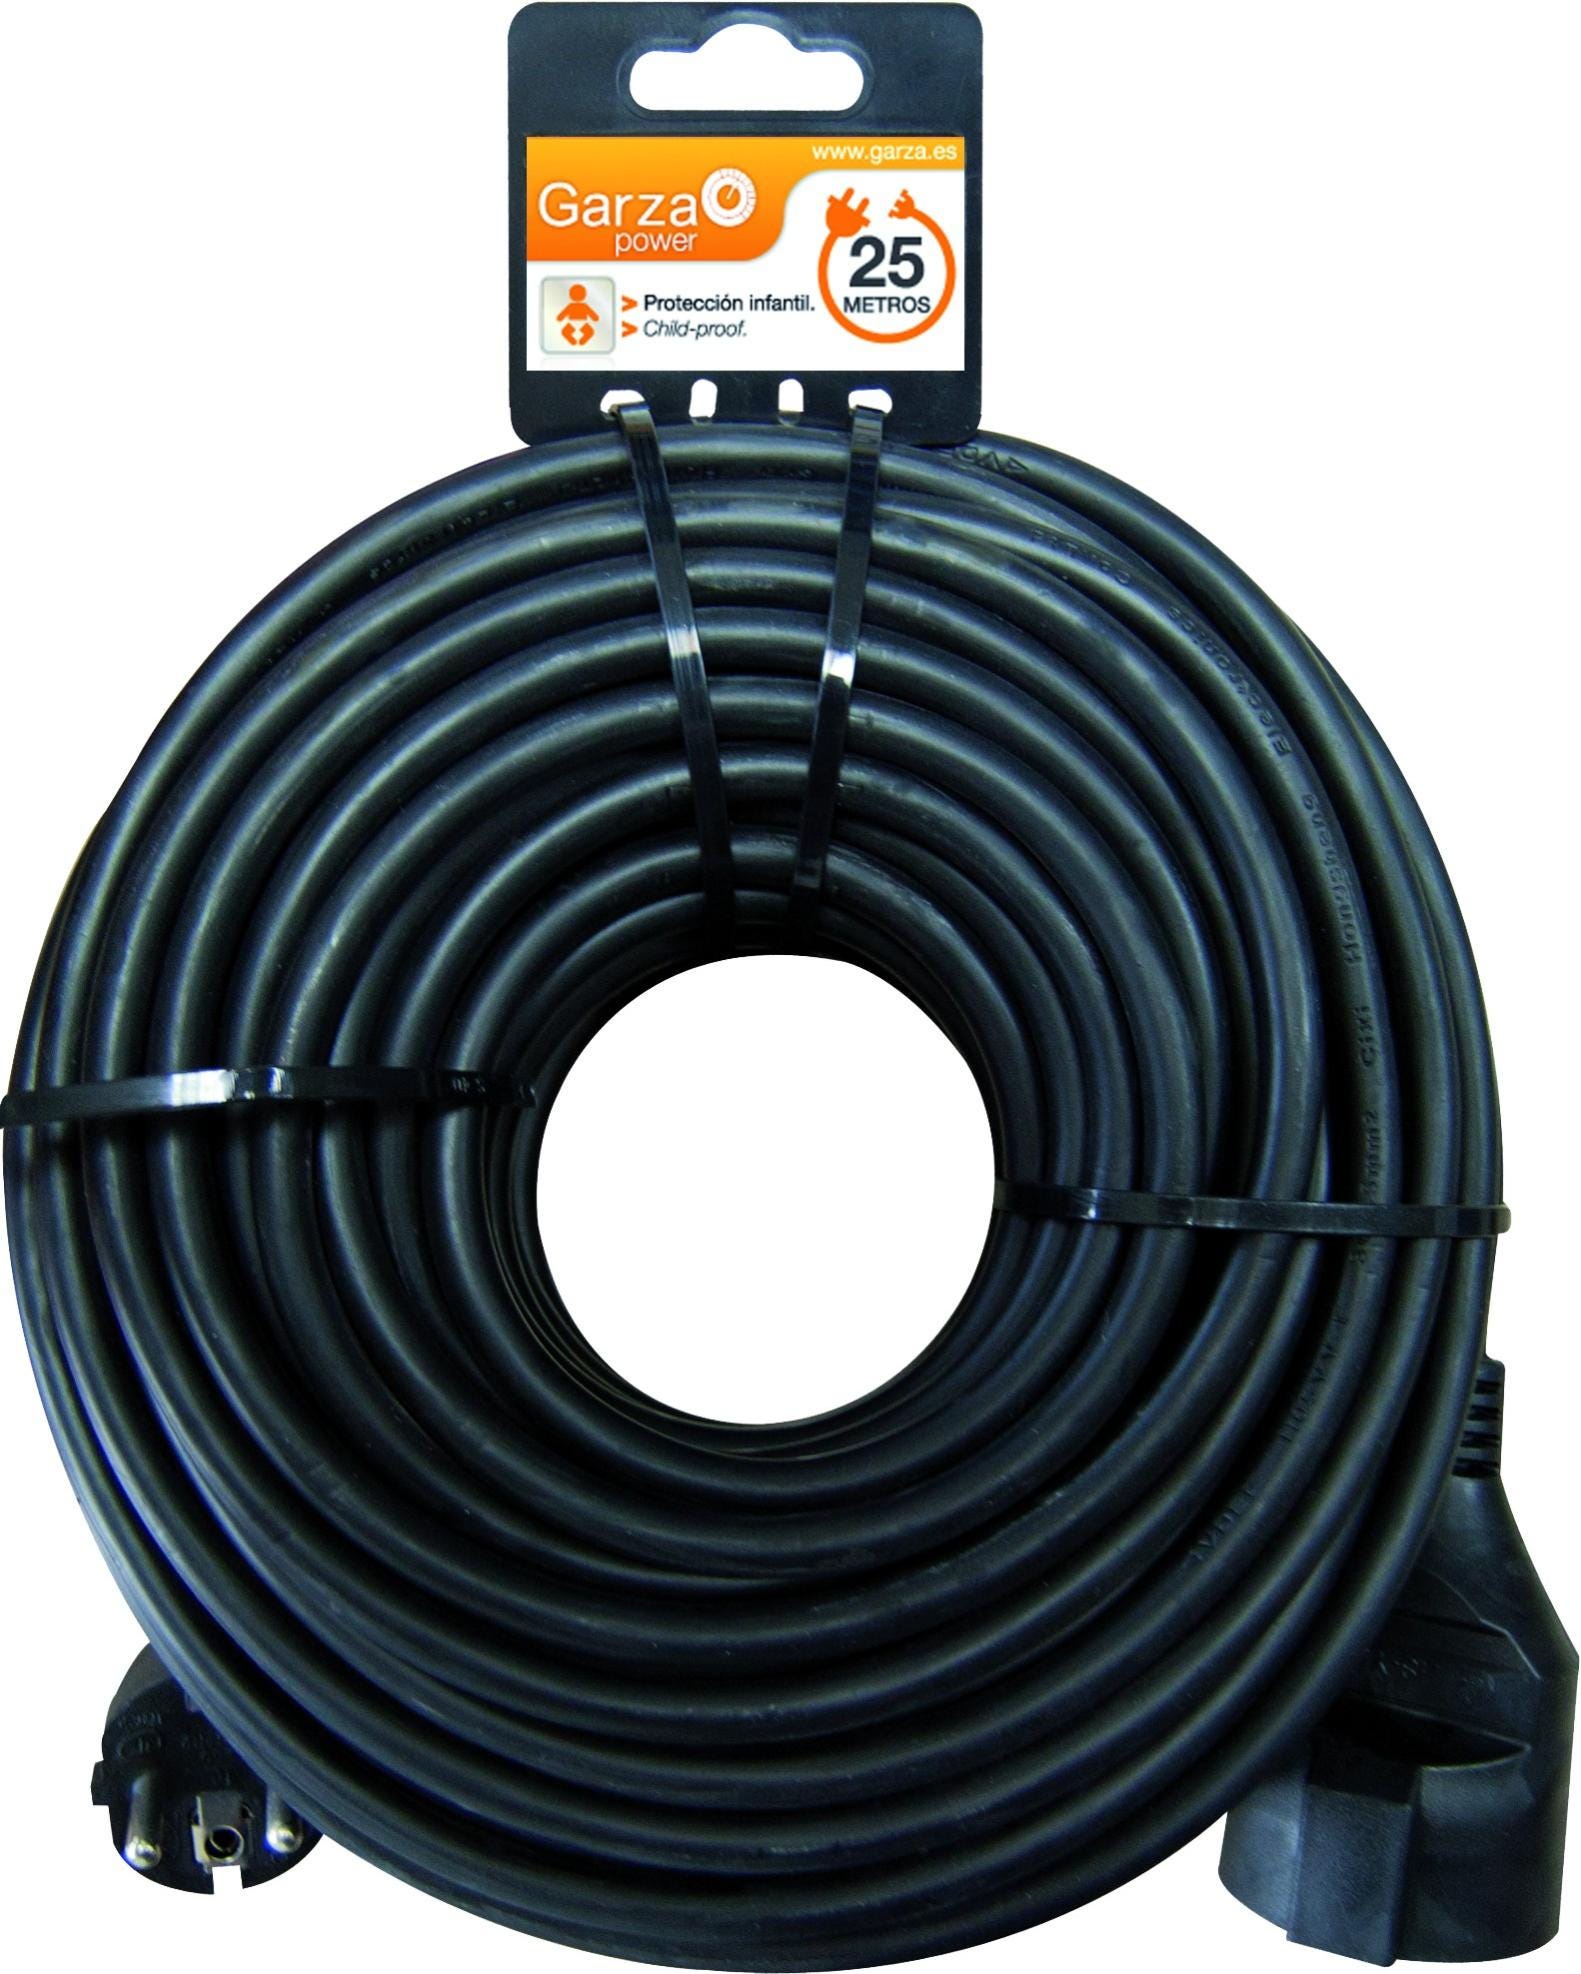 Garza - Cable alargador de corriente doméstico de 25 metros, negro, con  toma de tierra hasta 16 Amperios (3680W)